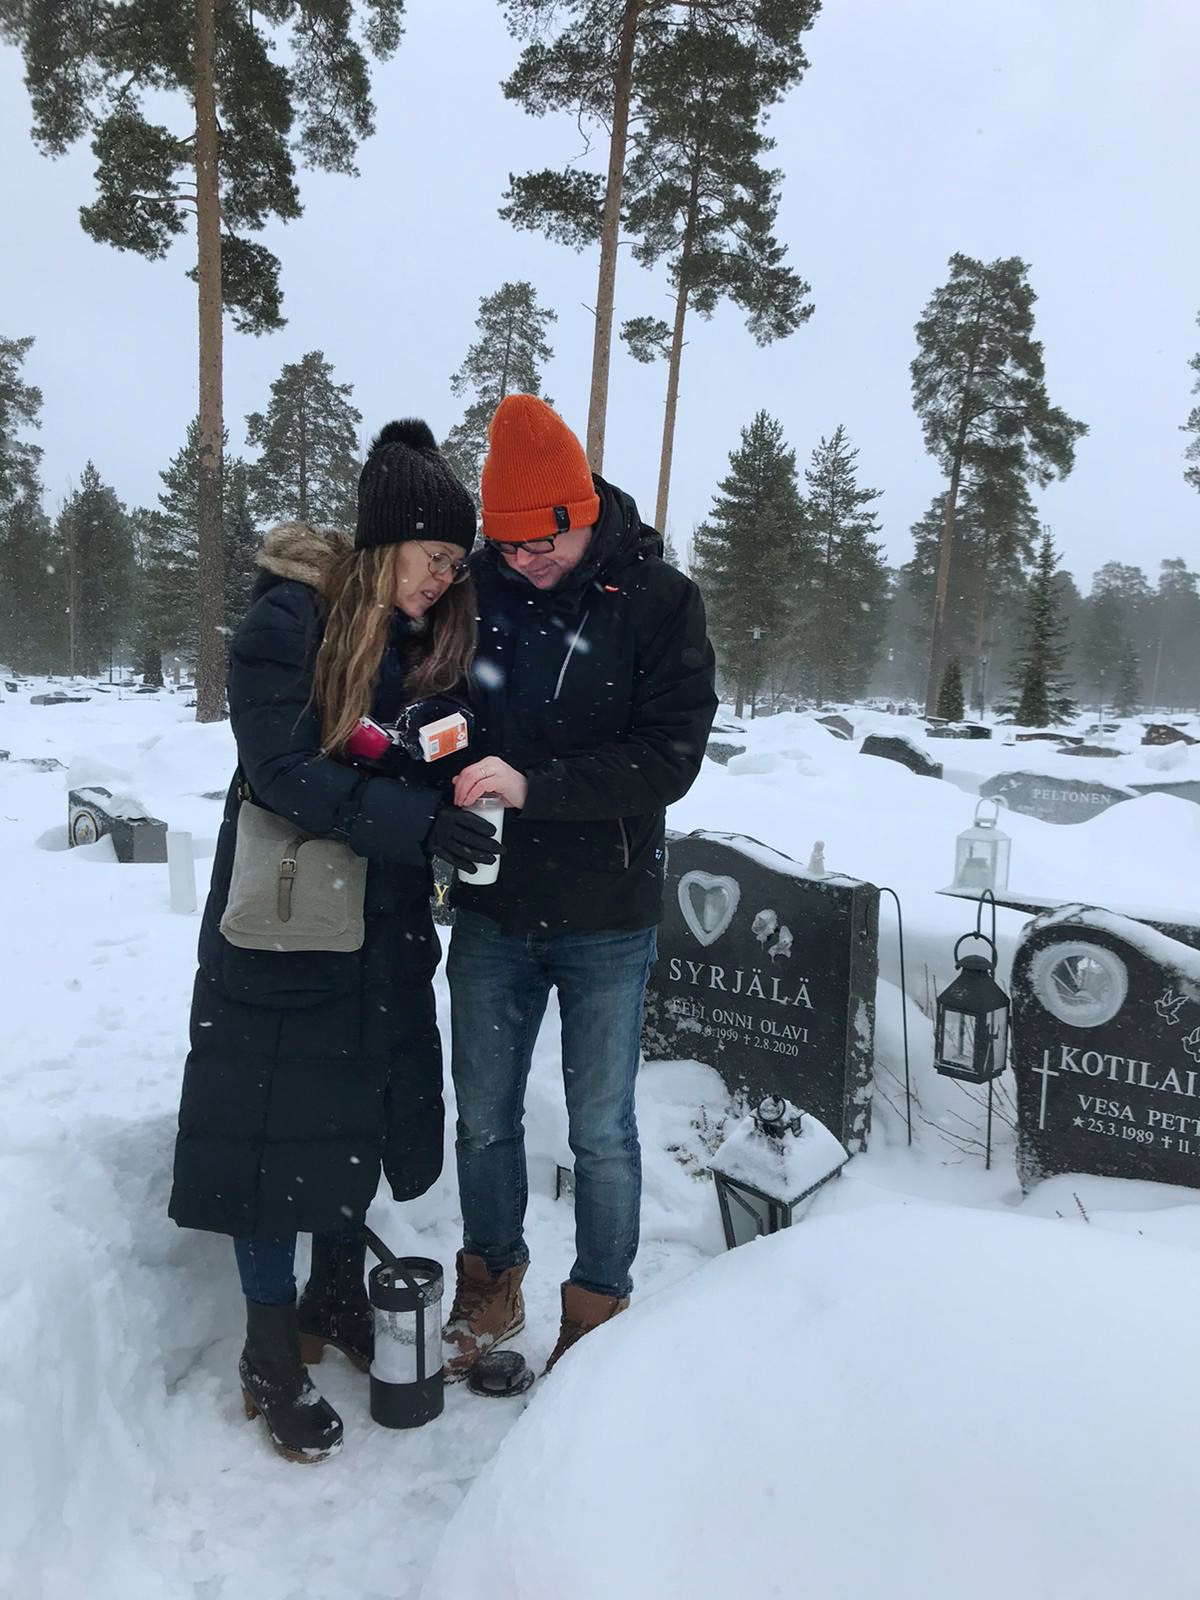 Marjo ja Tommi Syrjälä syttyävät kynttilää Eelin haudalla talvella.